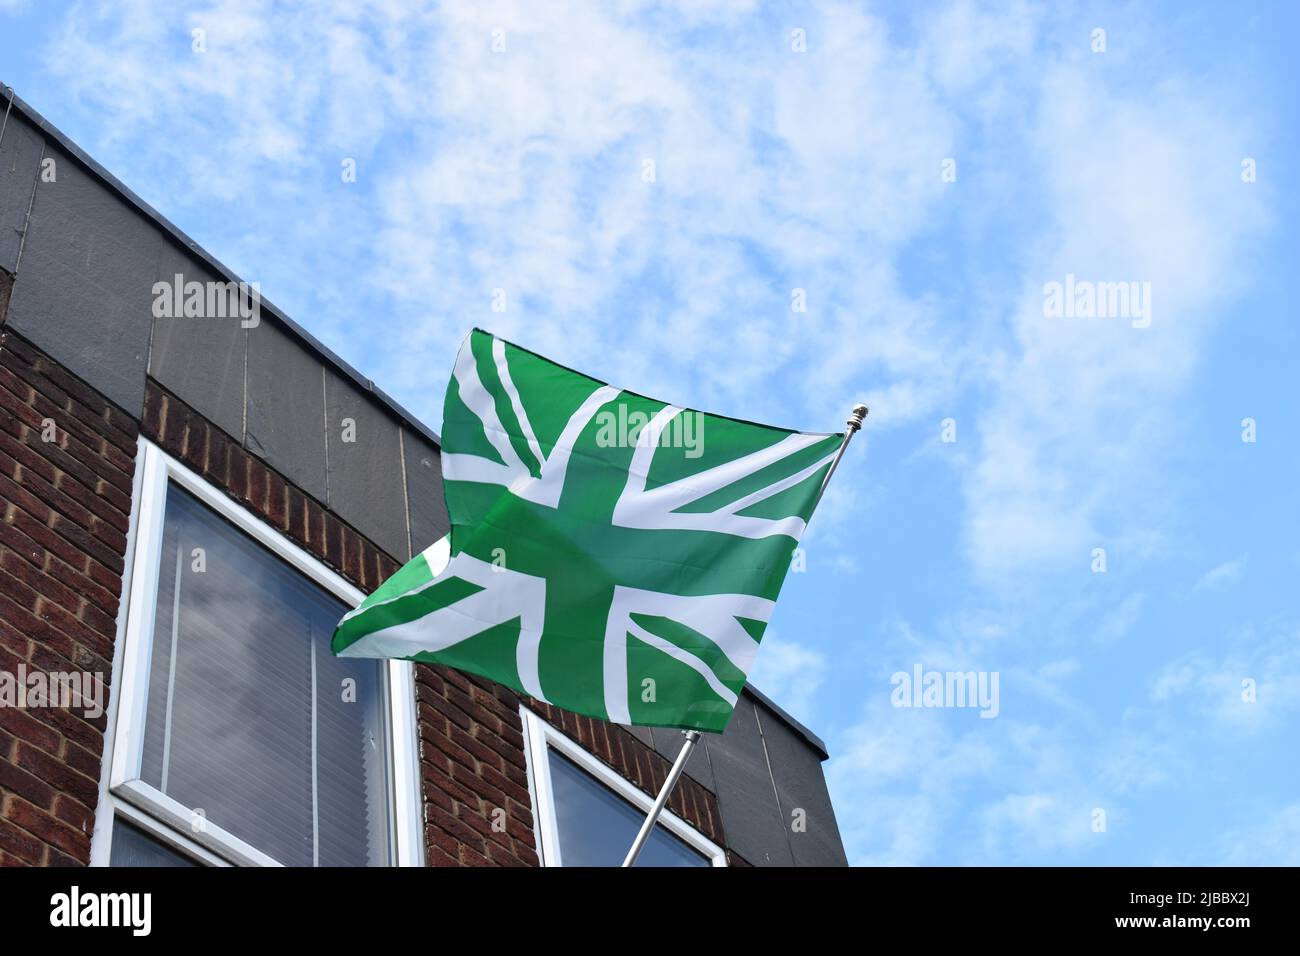 Die grüne Flagge wurde in Newport Pagnell geflogen, um zu feiern, dass der Newport Pagnell Town Football Club die FA Vase gewann. Die NPTFC-Farben sind grün und weiß. Stockfoto